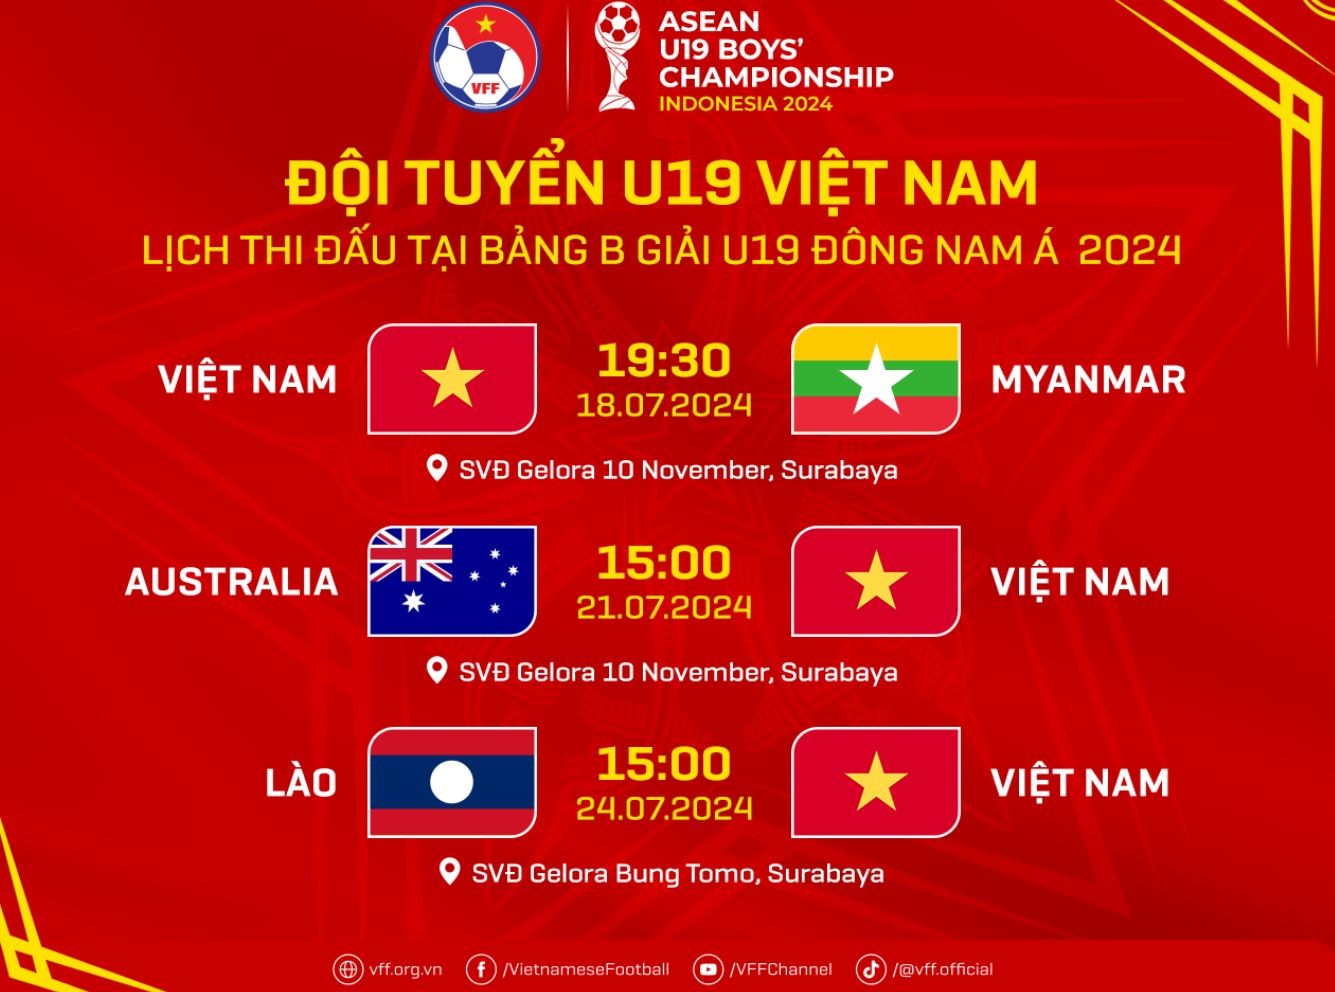 Lịch thi đấu của U19 Việt Nam